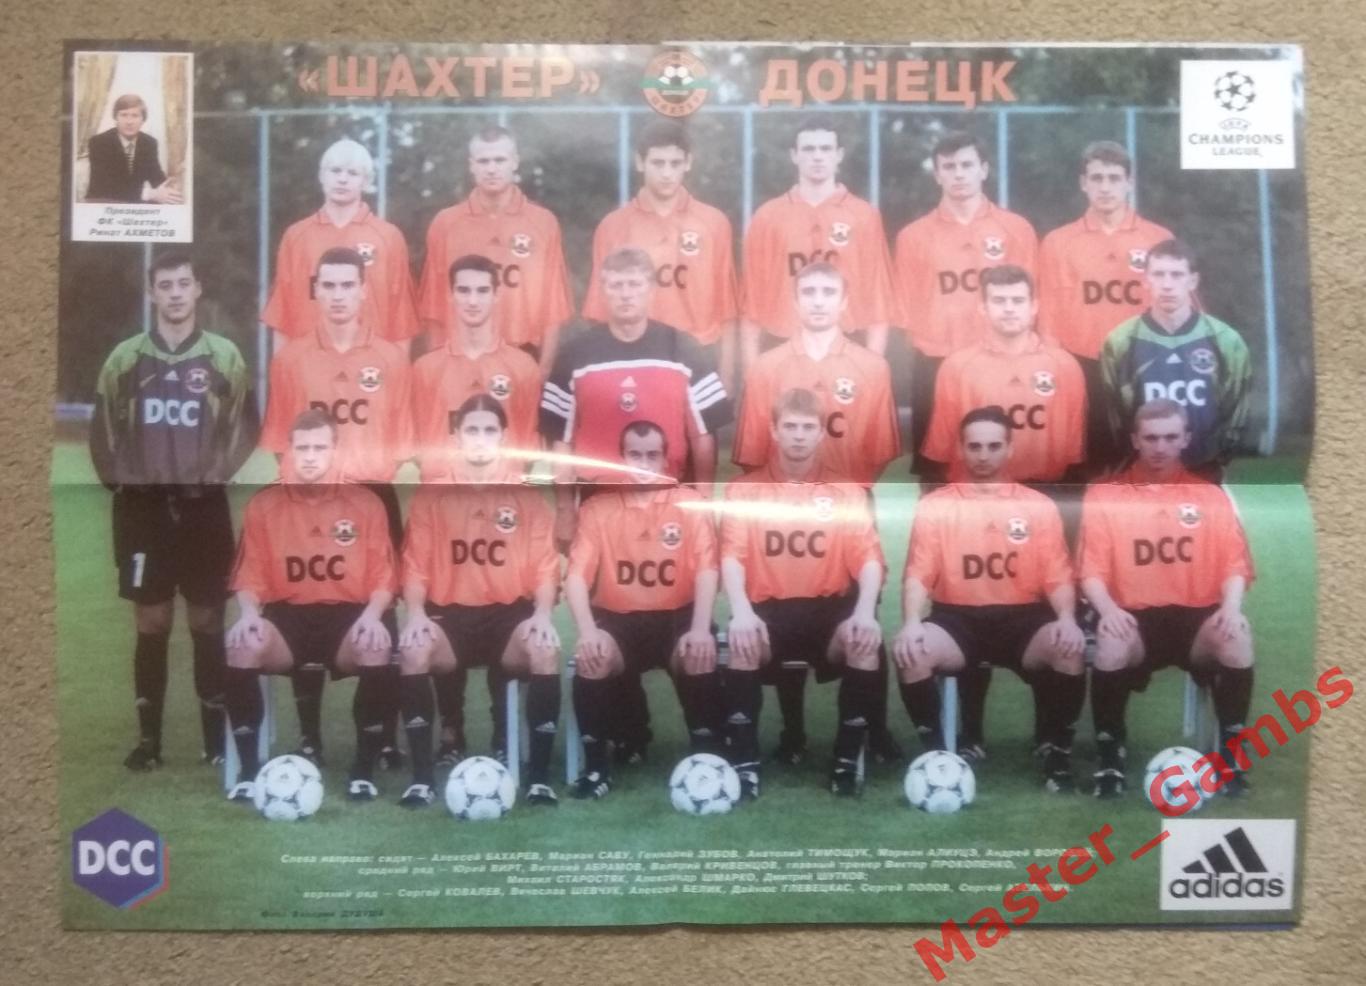 Журнал Футбол интер # 7 (30) 2000 (спецвыпуск Шахтер Донецк) 2